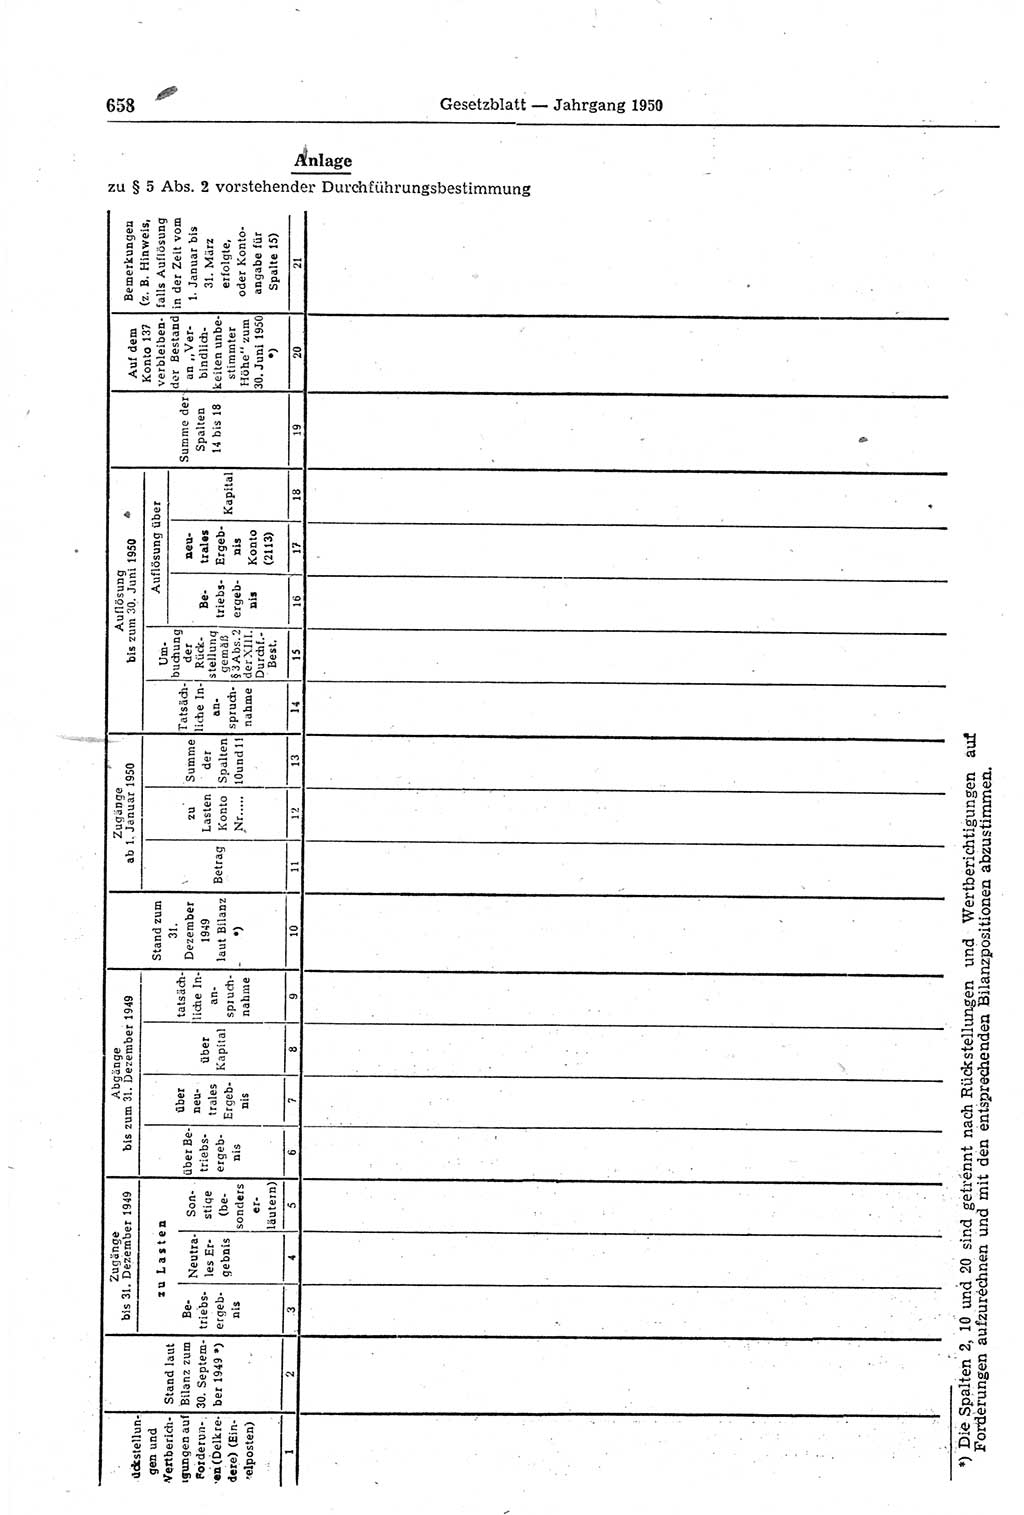 Gesetzblatt (GBl.) der Deutschen Demokratischen Republik (DDR) 1950, Seite 658 (GBl. DDR 1950, S. 658)